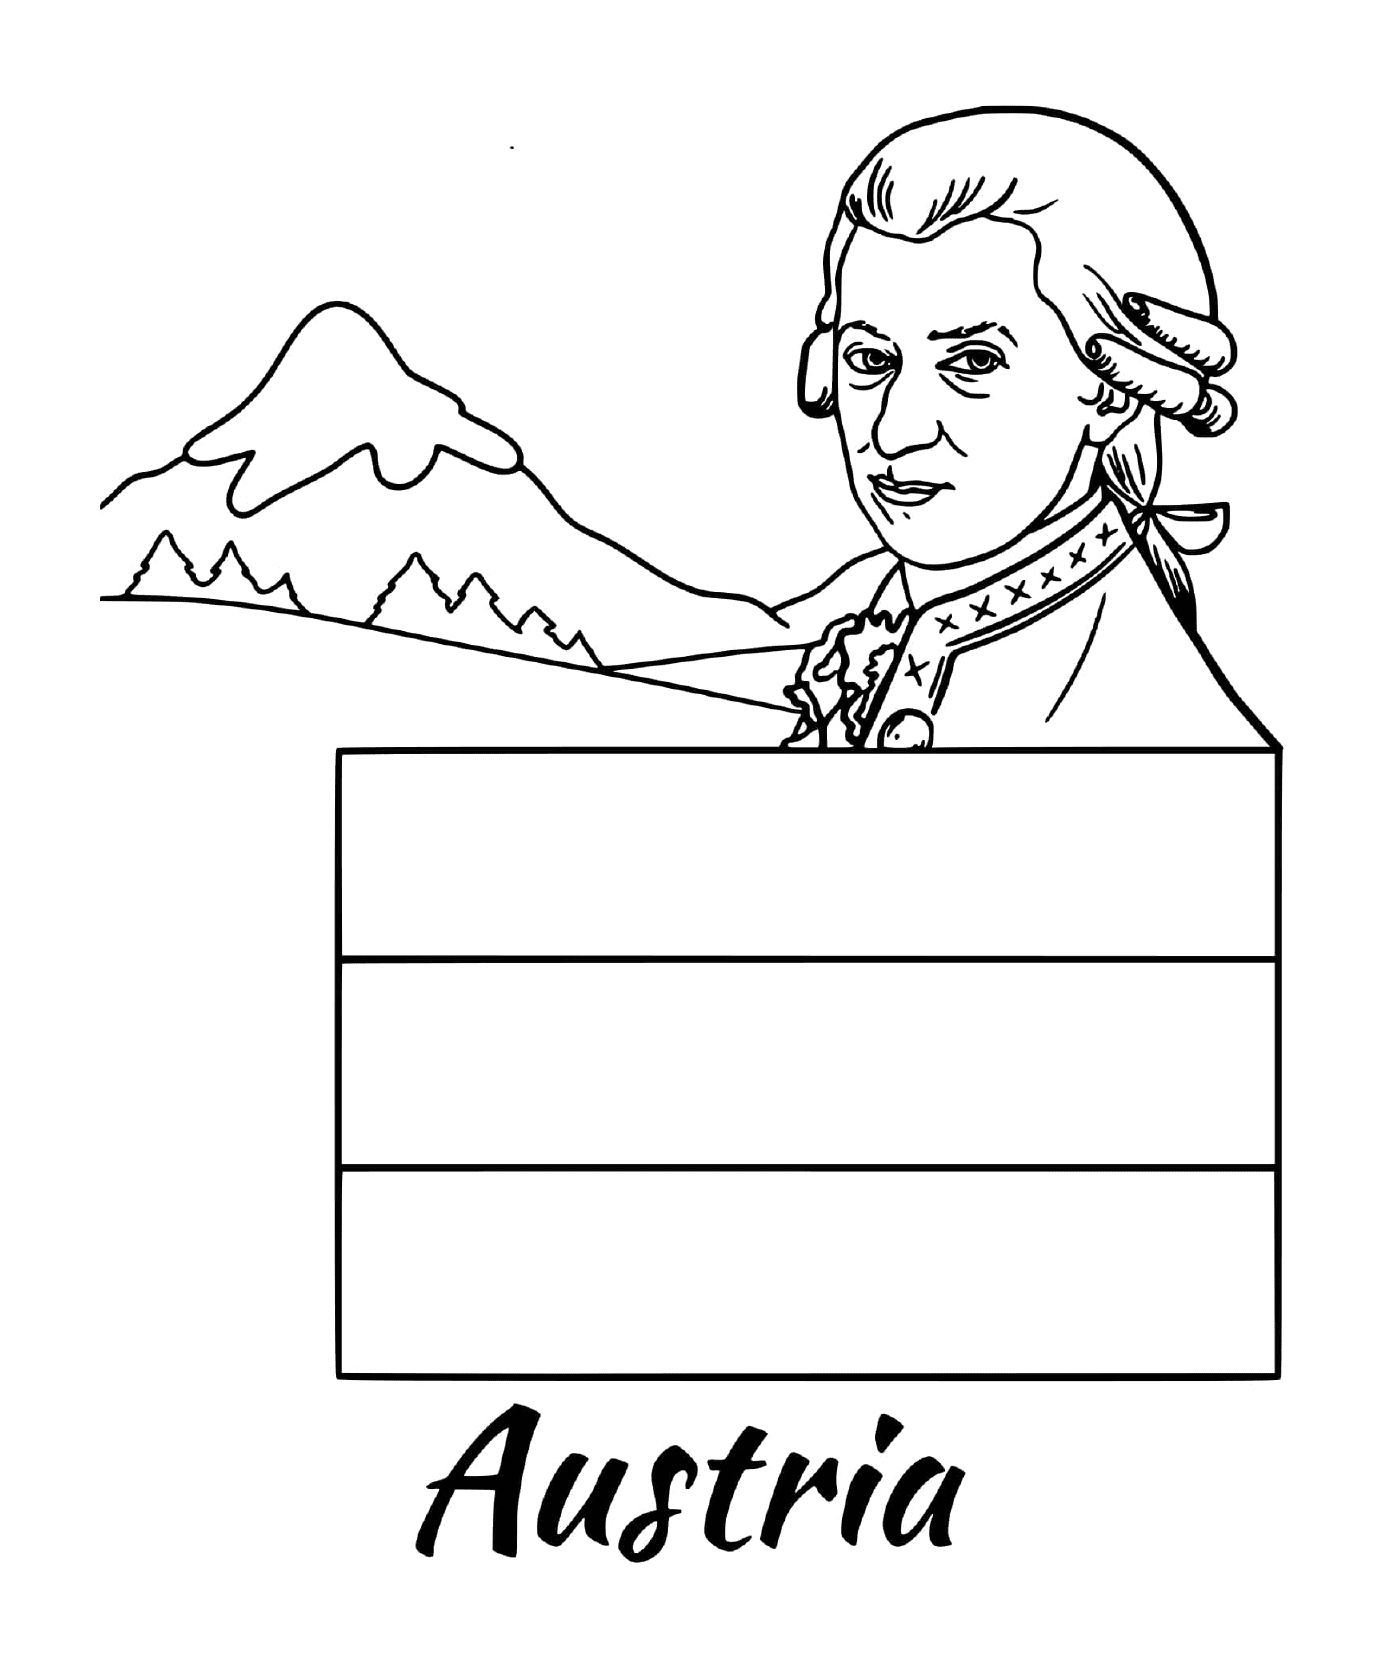  奥地利国旗,莫扎特 